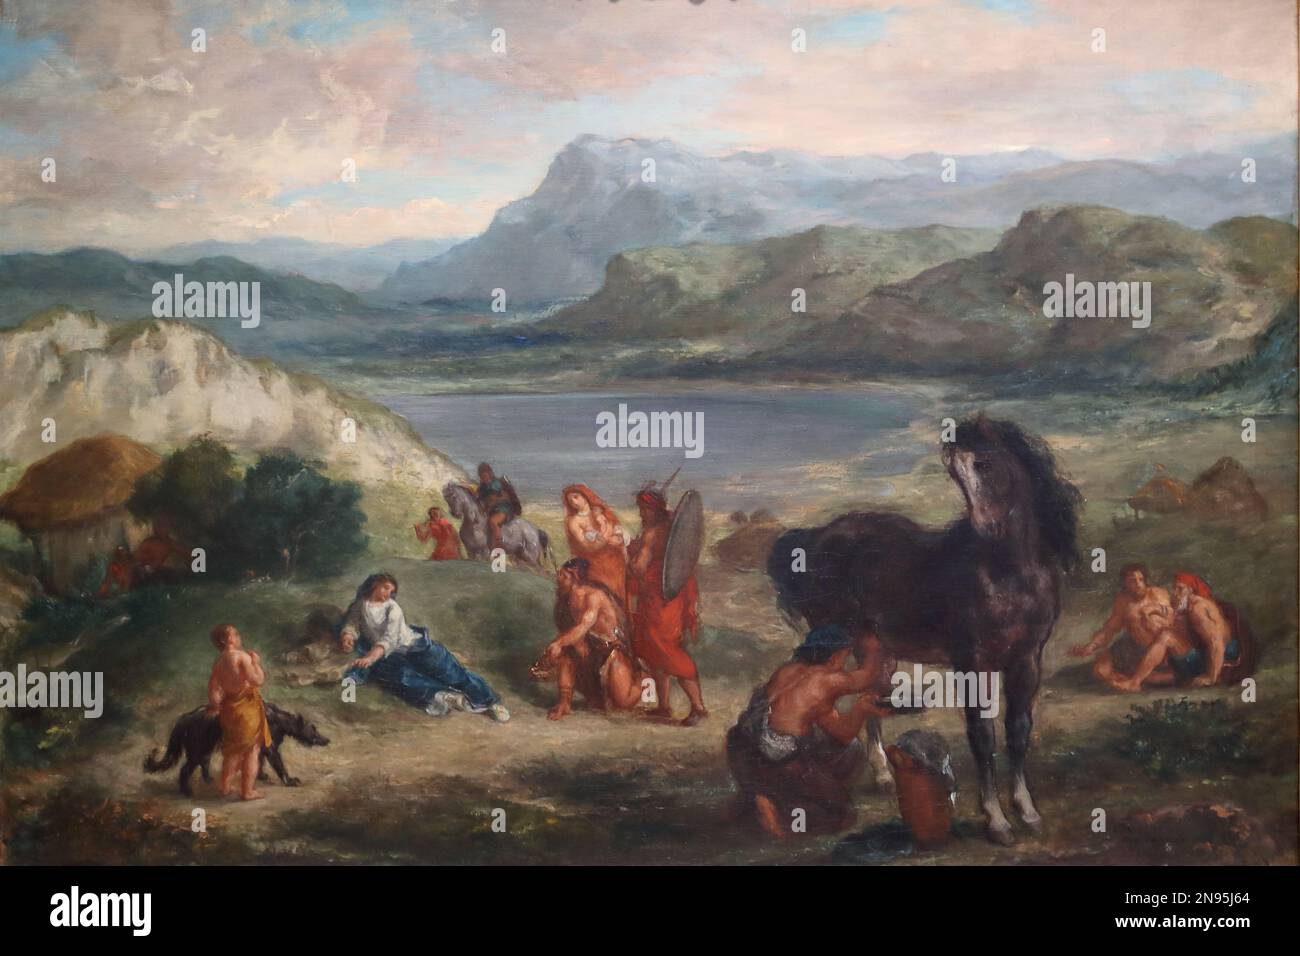 Ovid parmi les Scythiens par le peintre romantique français Eugene Delacroix à la National Gallery, Londres, Royaume-Uni Banque D'Images